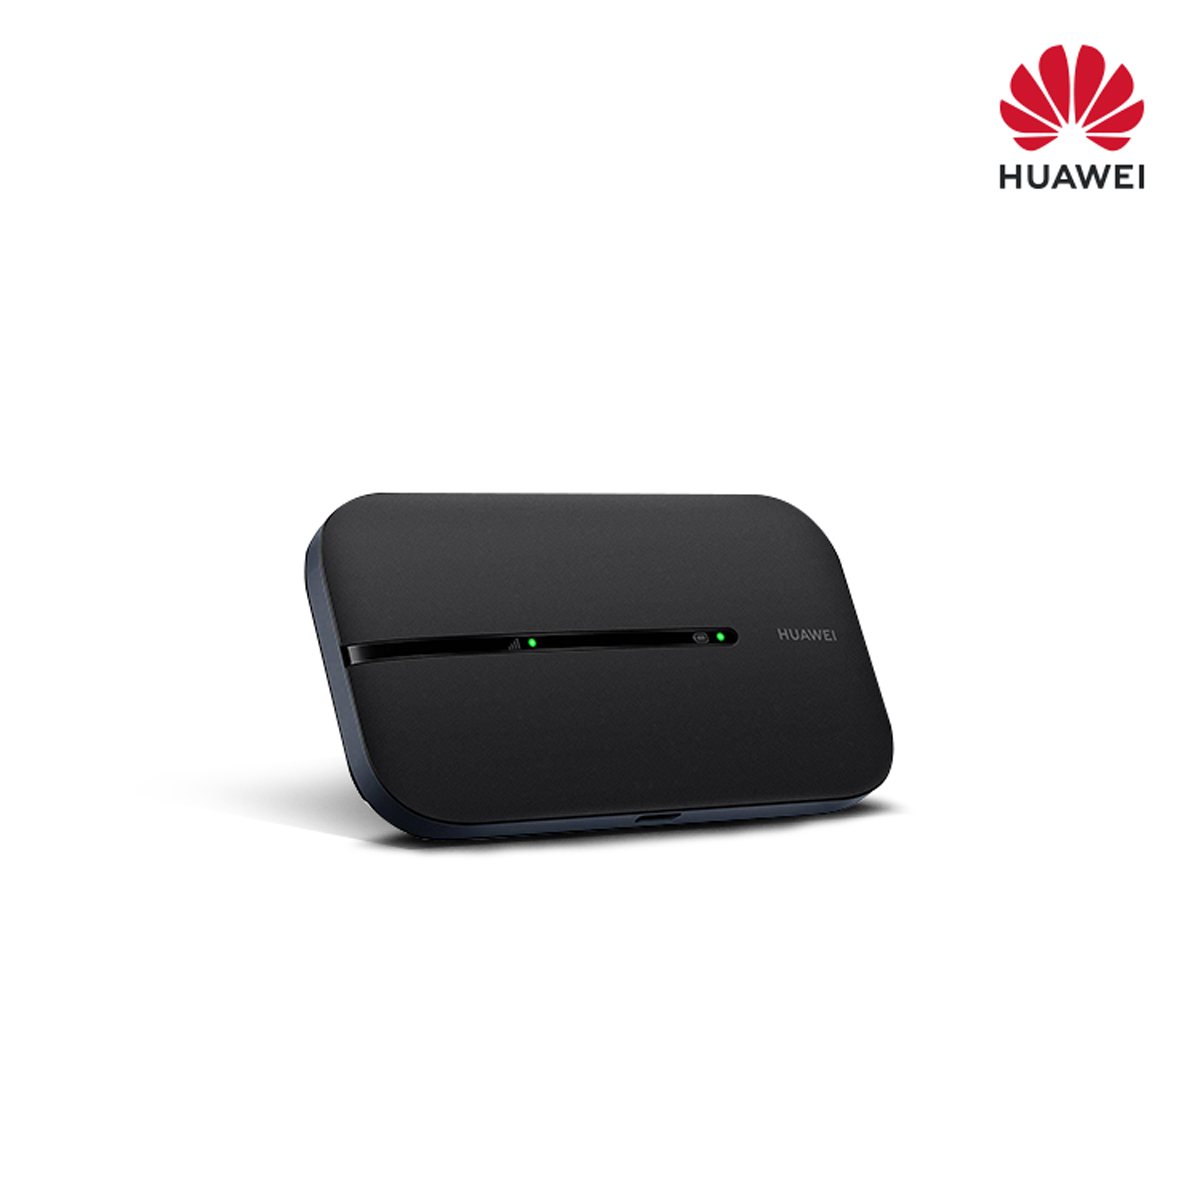 Huawei-E5576-856-4G-Pocket-WiFi-LTE-Category-4